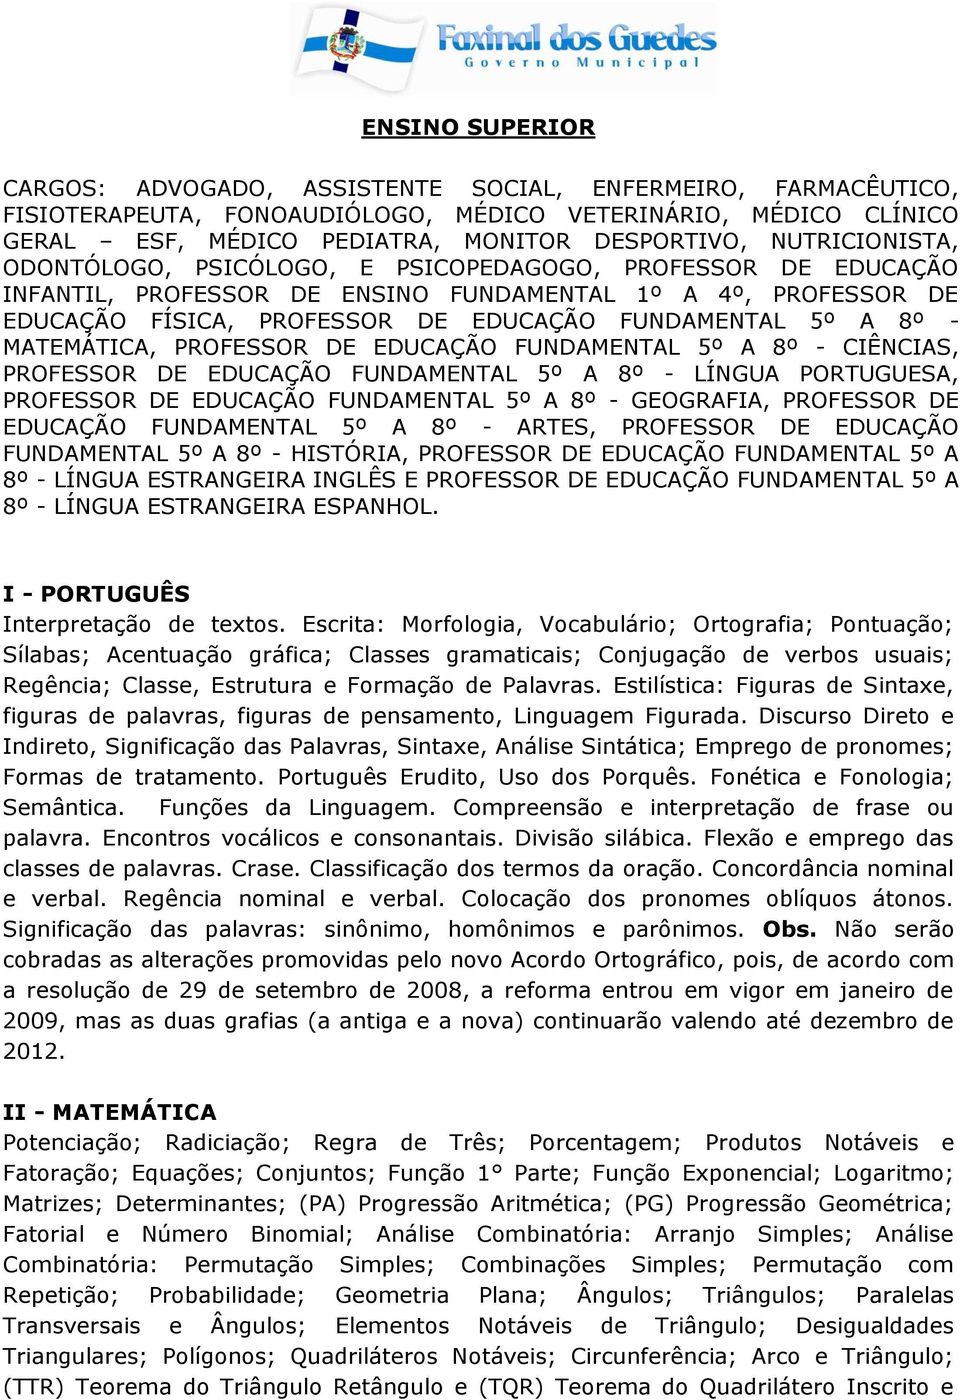 - MATEMÁTICA, PROFESSOR DE EDUCAÇÃO FUNDAMENTAL 5º A 8º - CIÊNCIAS, PROFESSOR DE EDUCAÇÃO FUNDAMENTAL 5º A 8º - LÍNGUA PORTUGUESA, PROFESSOR DE EDUCAÇÃO FUNDAMENTAL 5º A 8º - GEOGRAFIA, PROFESSOR DE